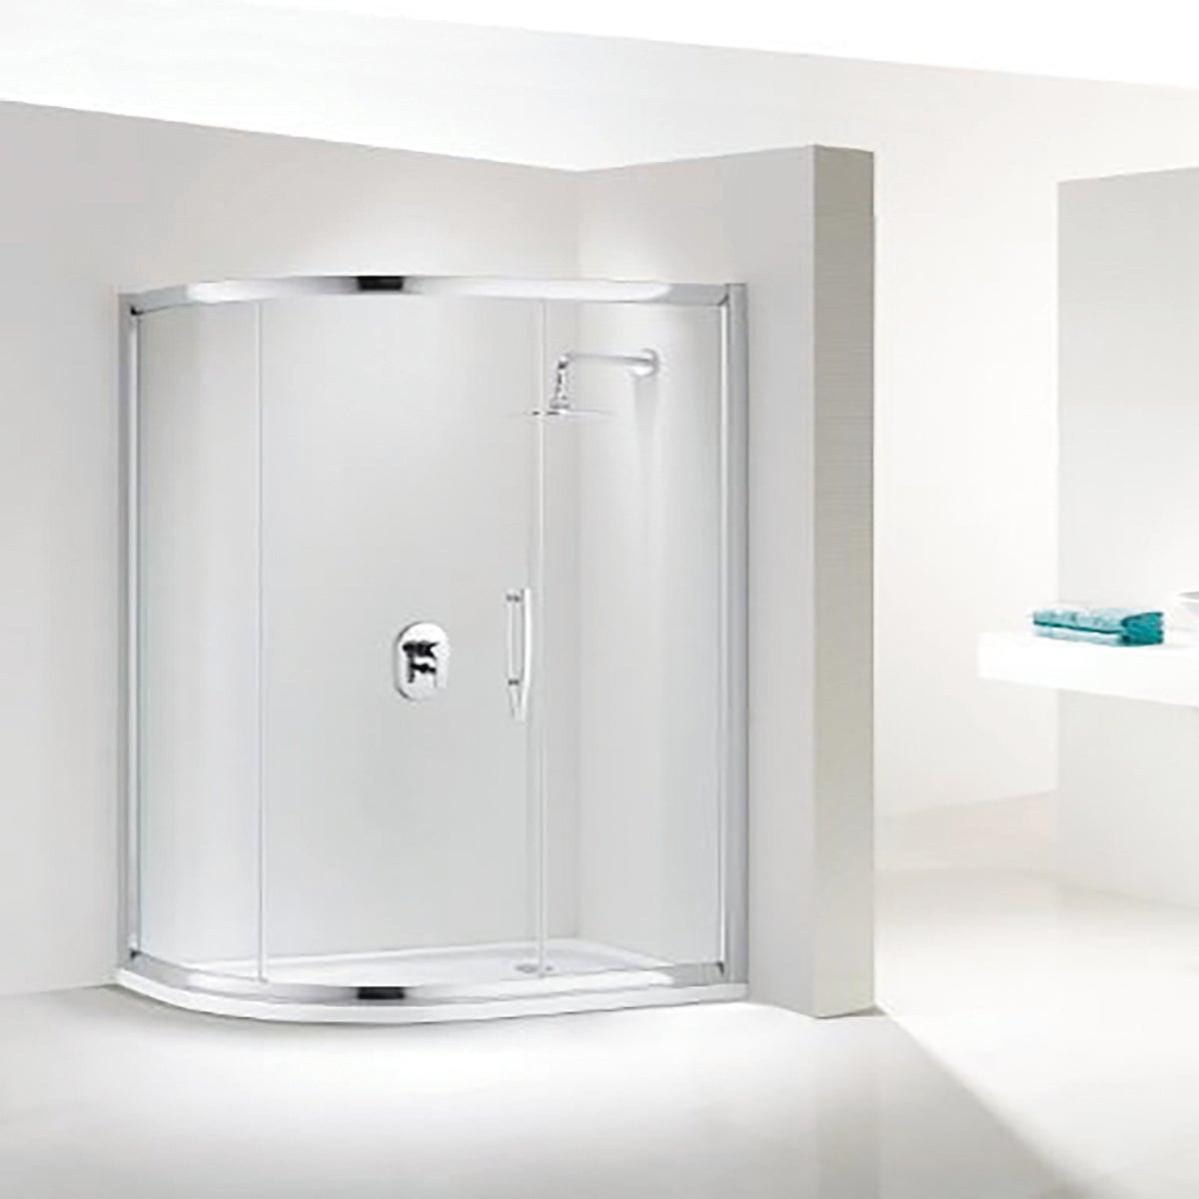 Panno per i vetri del box doccia - Eudorex Cleaning